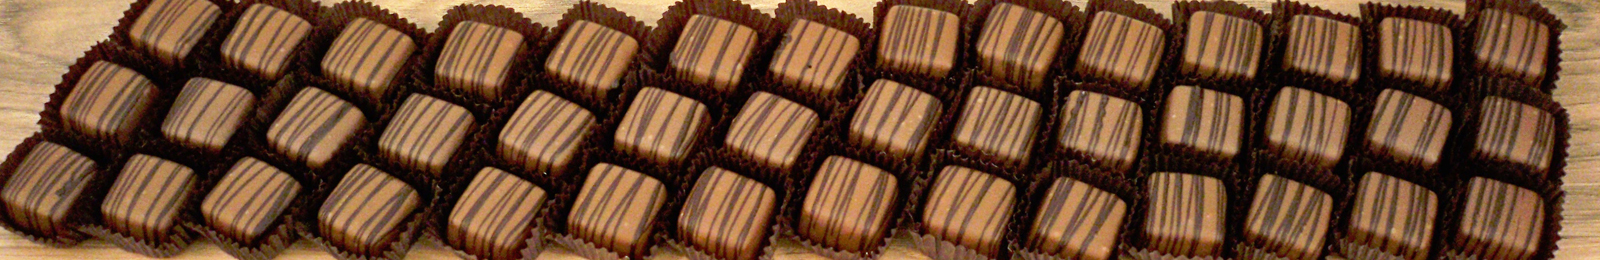 Boxed Meltaway Chocolates